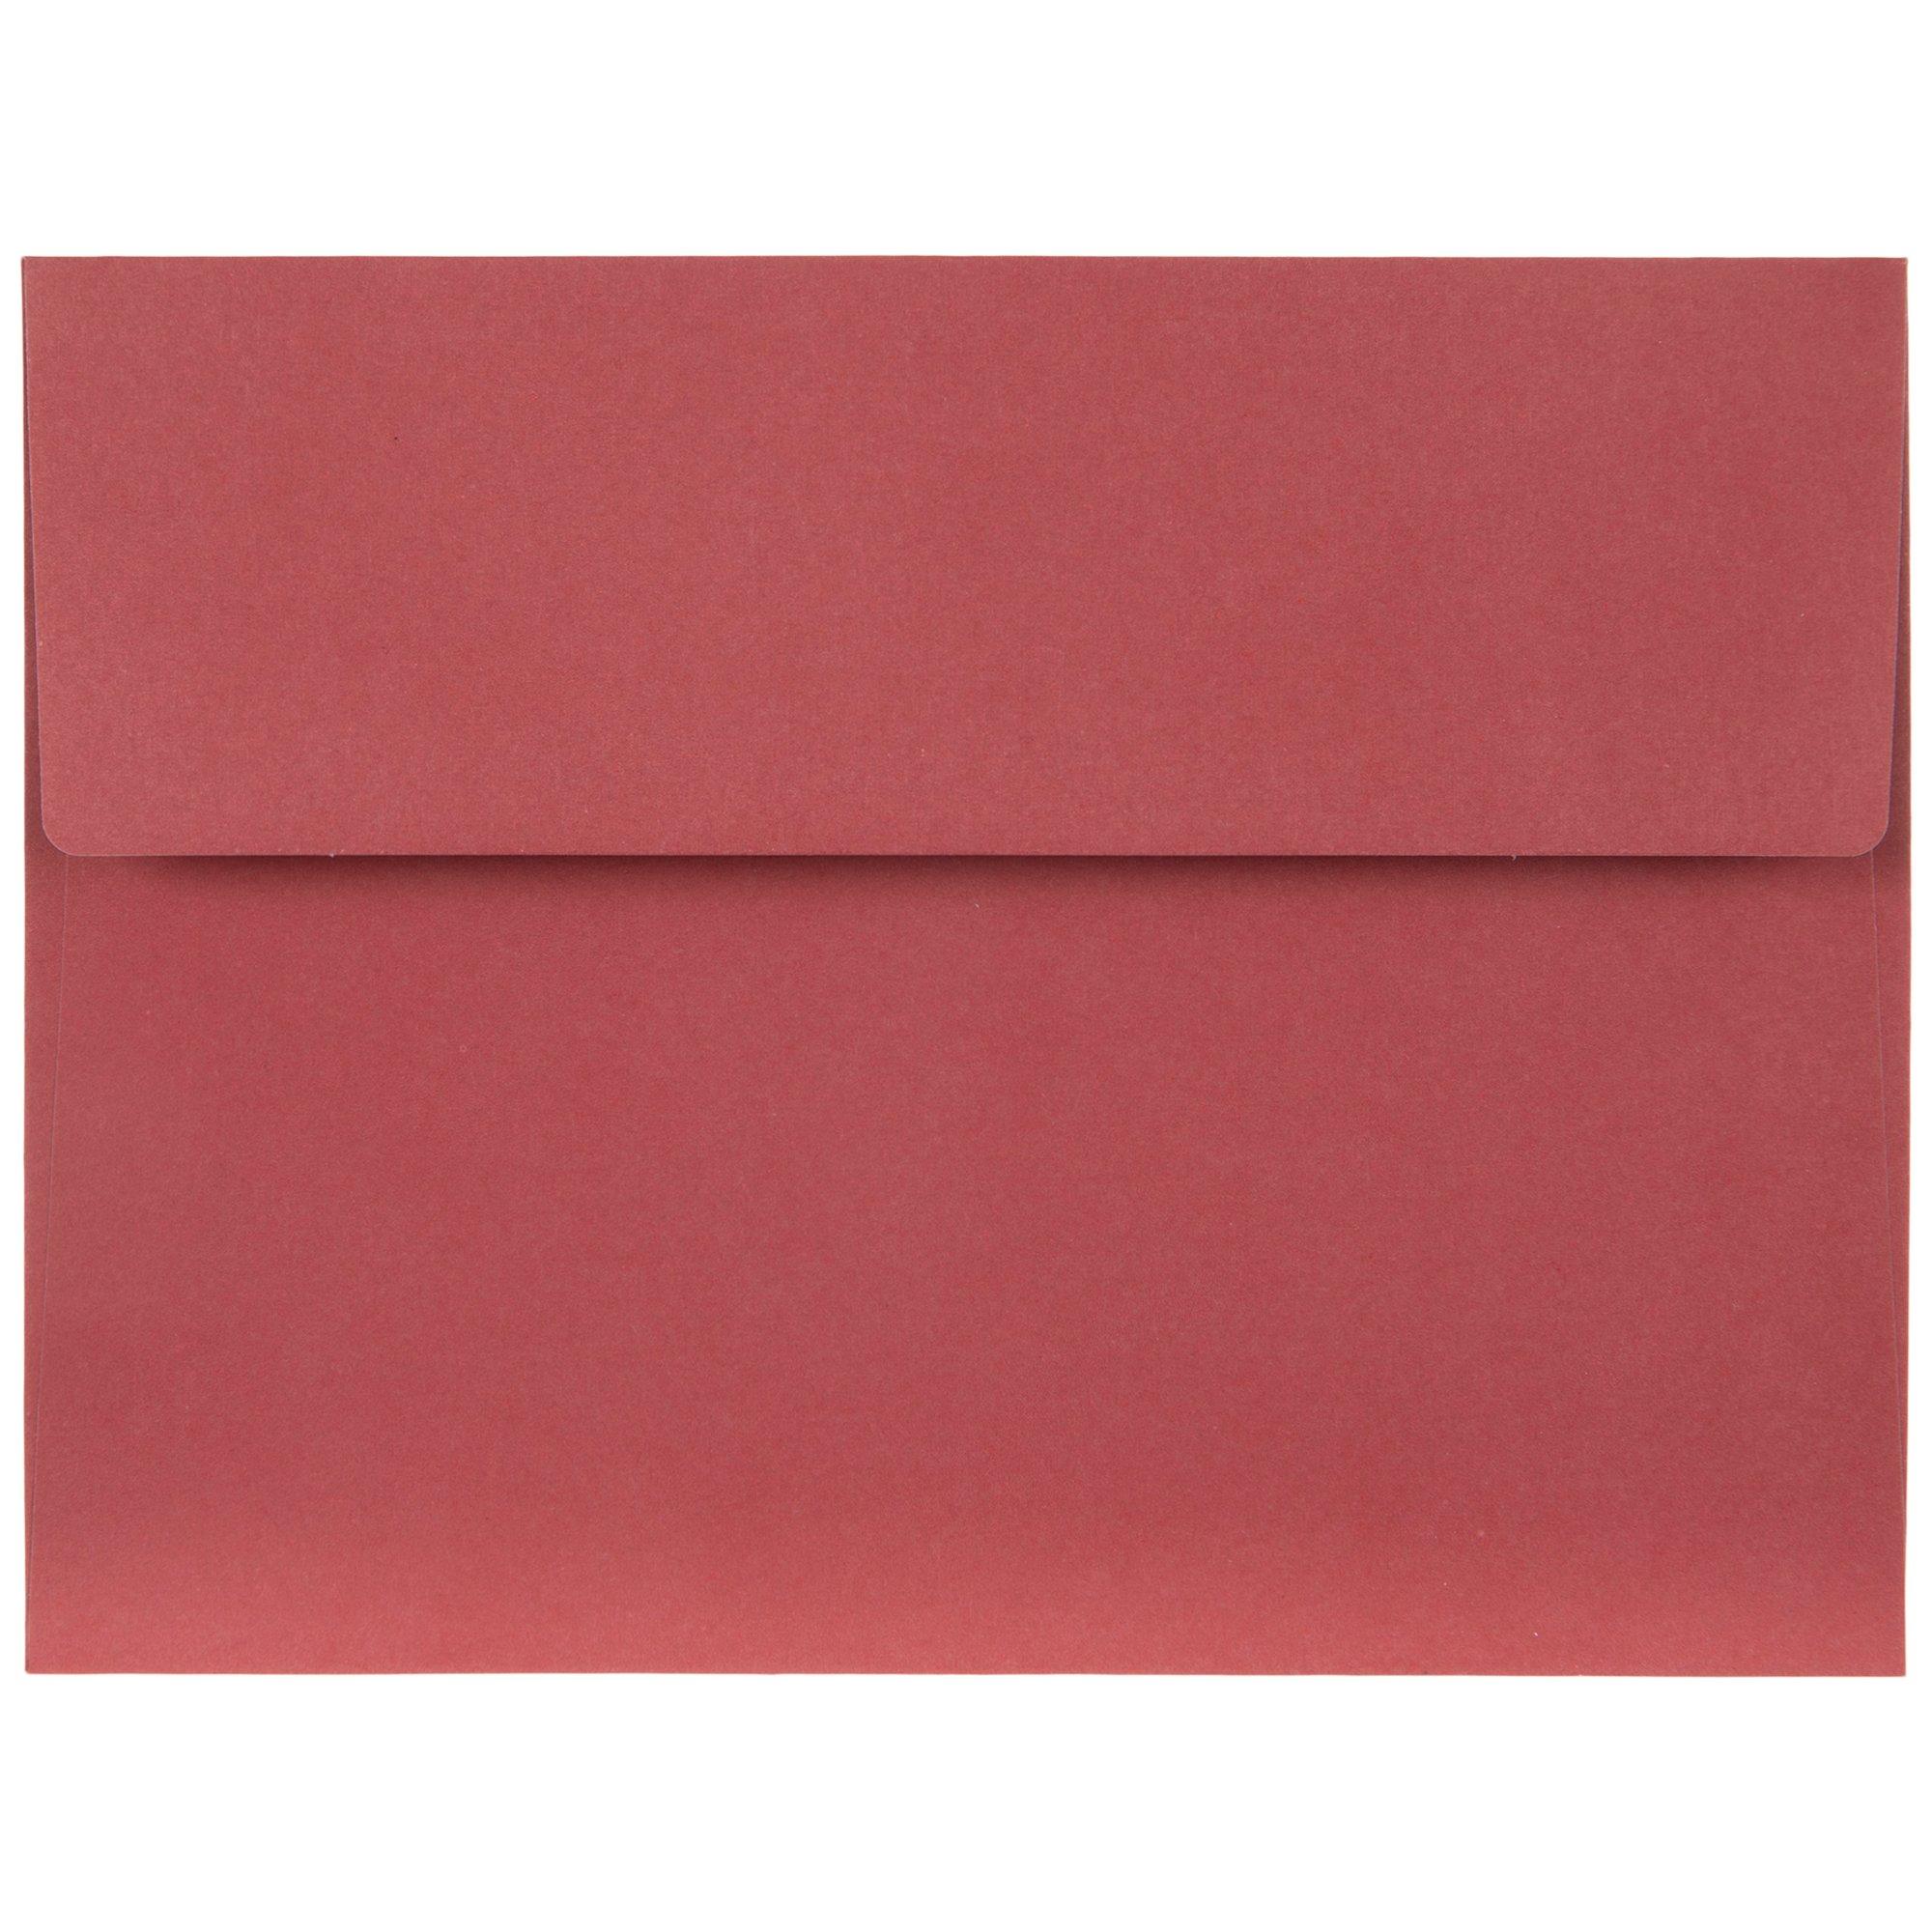 envelopes-a2-hobby-lobby-448118